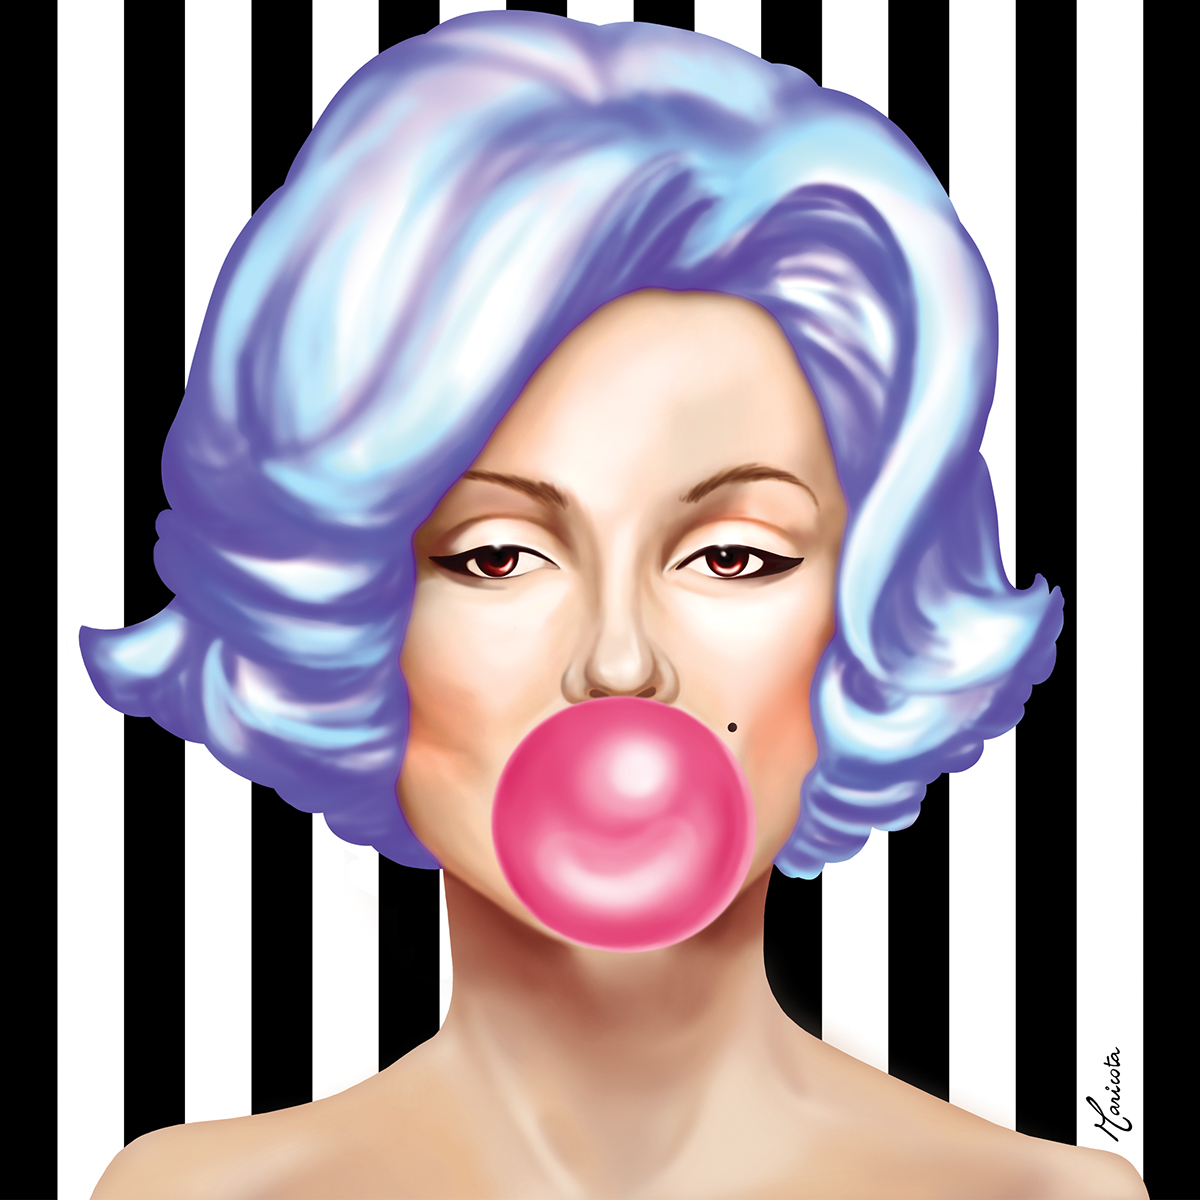 bonequinhadeluxo popart lollipop pinturadigital DigitalIllustration Maricota breakfastattiffanys pirulito stripes listras Marilyn Monroe